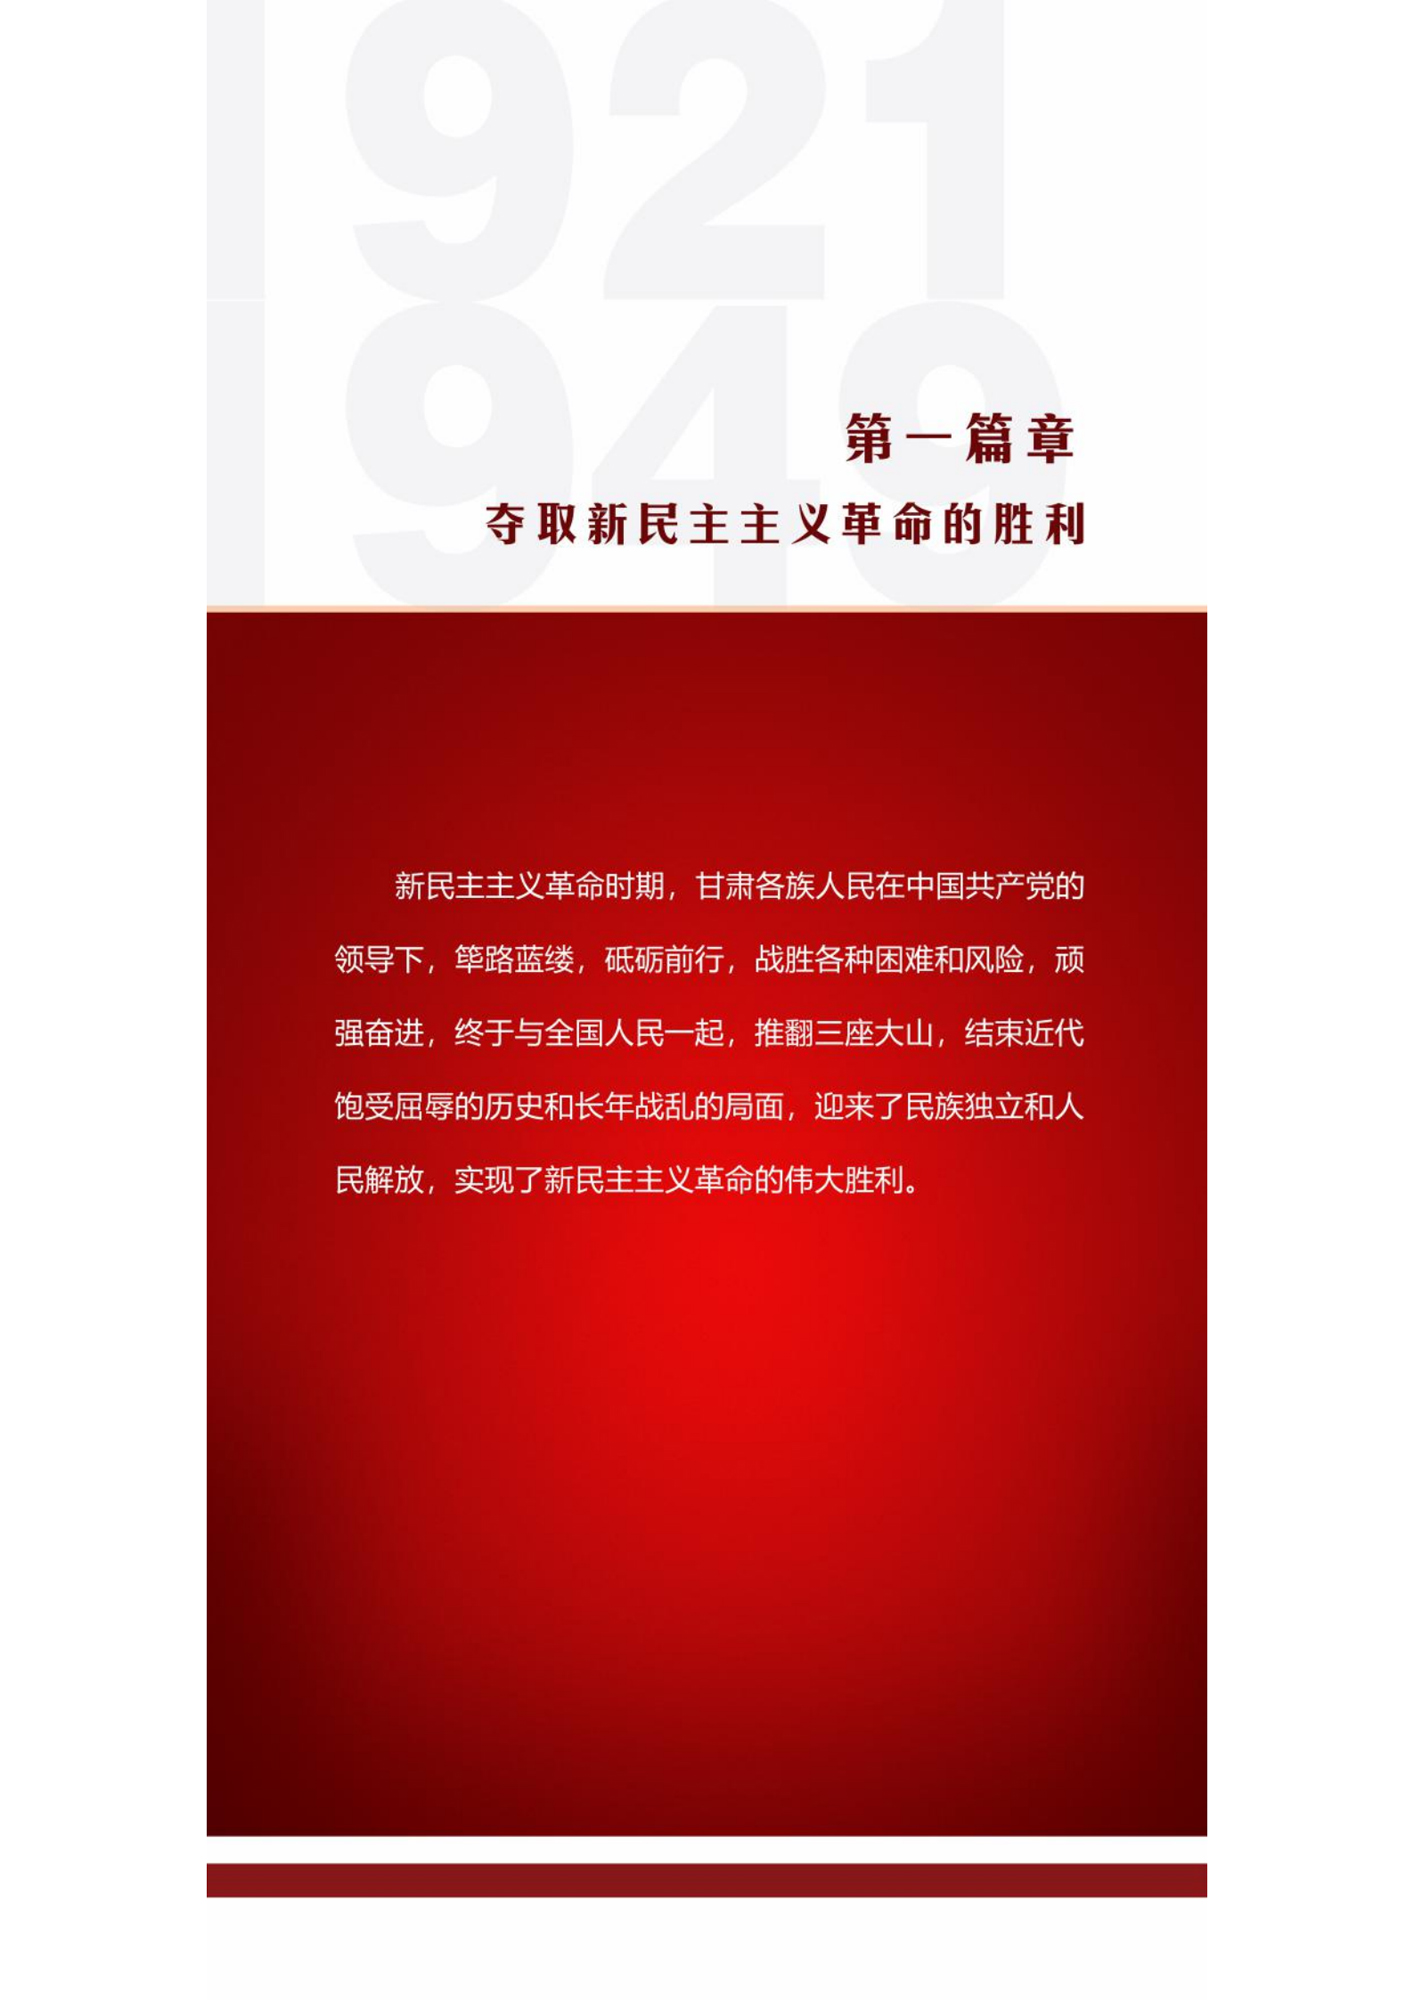 【专题】"百年华诞·绚丽陇原"庆祝中国共产党成立100周年图片展